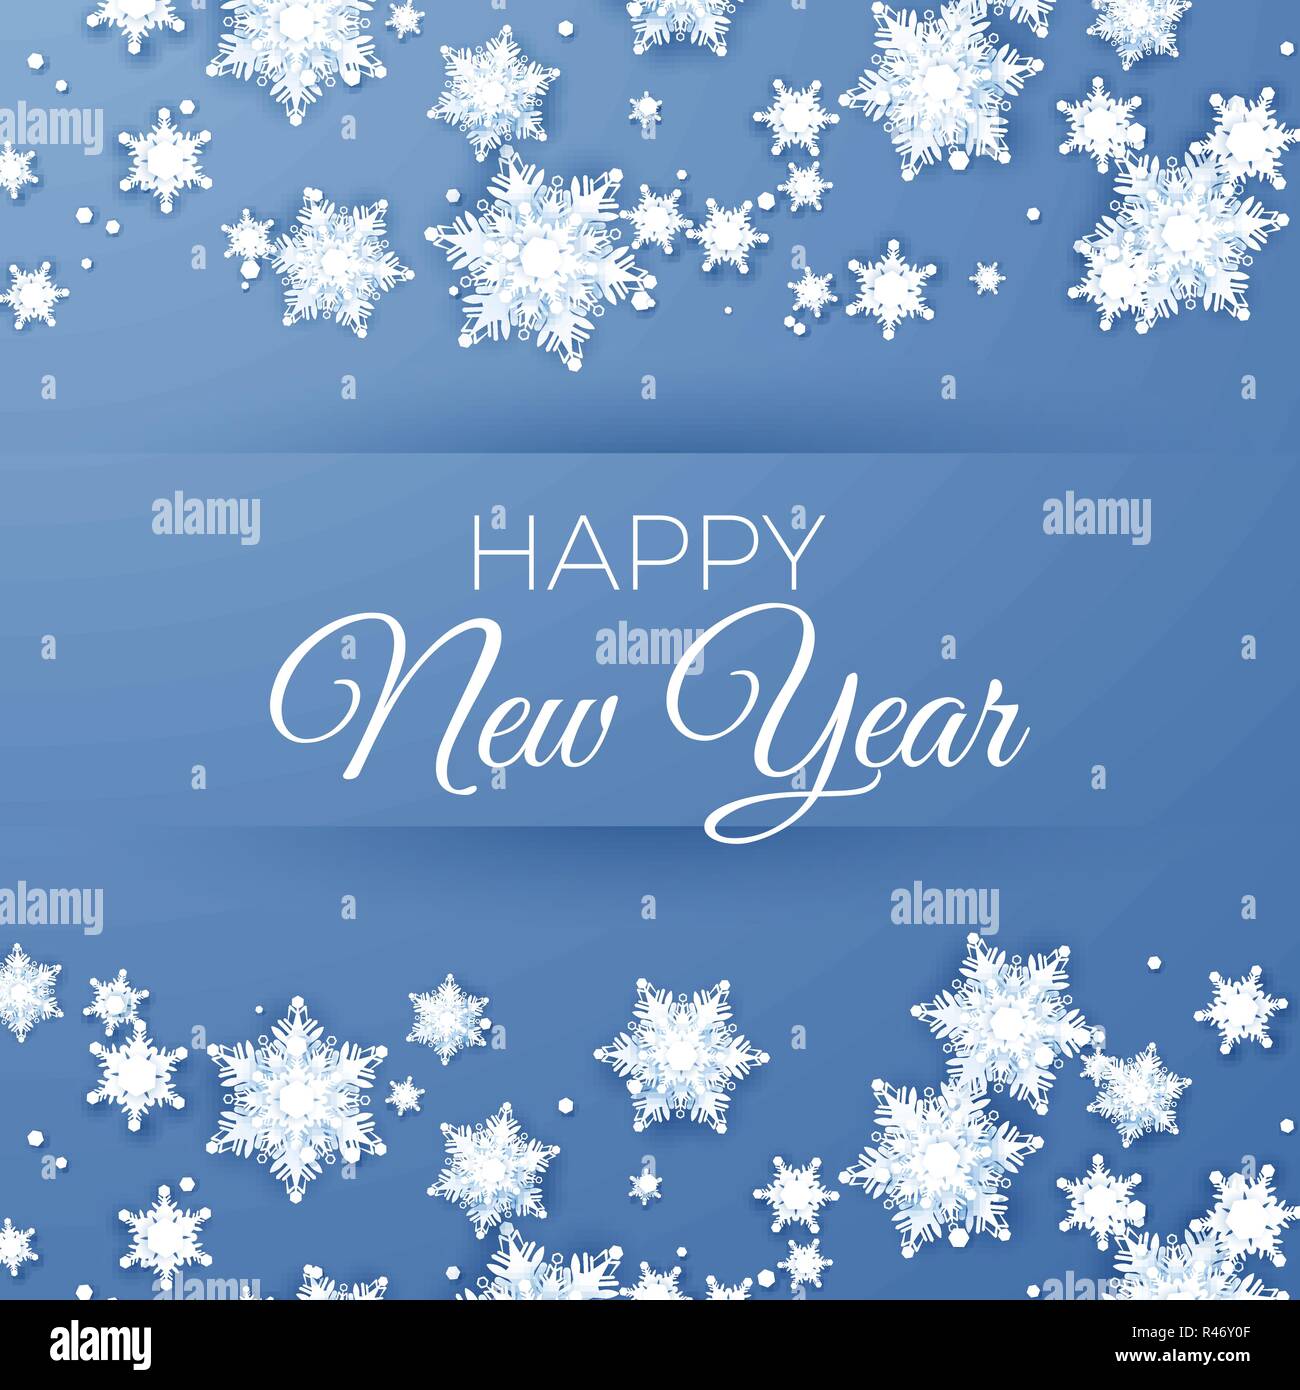 Frohes Neues Jahr Gruß Postkarte. Papier Schneeflocken Muster Hintergrund. Origami Schneefall. Vector Illustration Stock Vektor